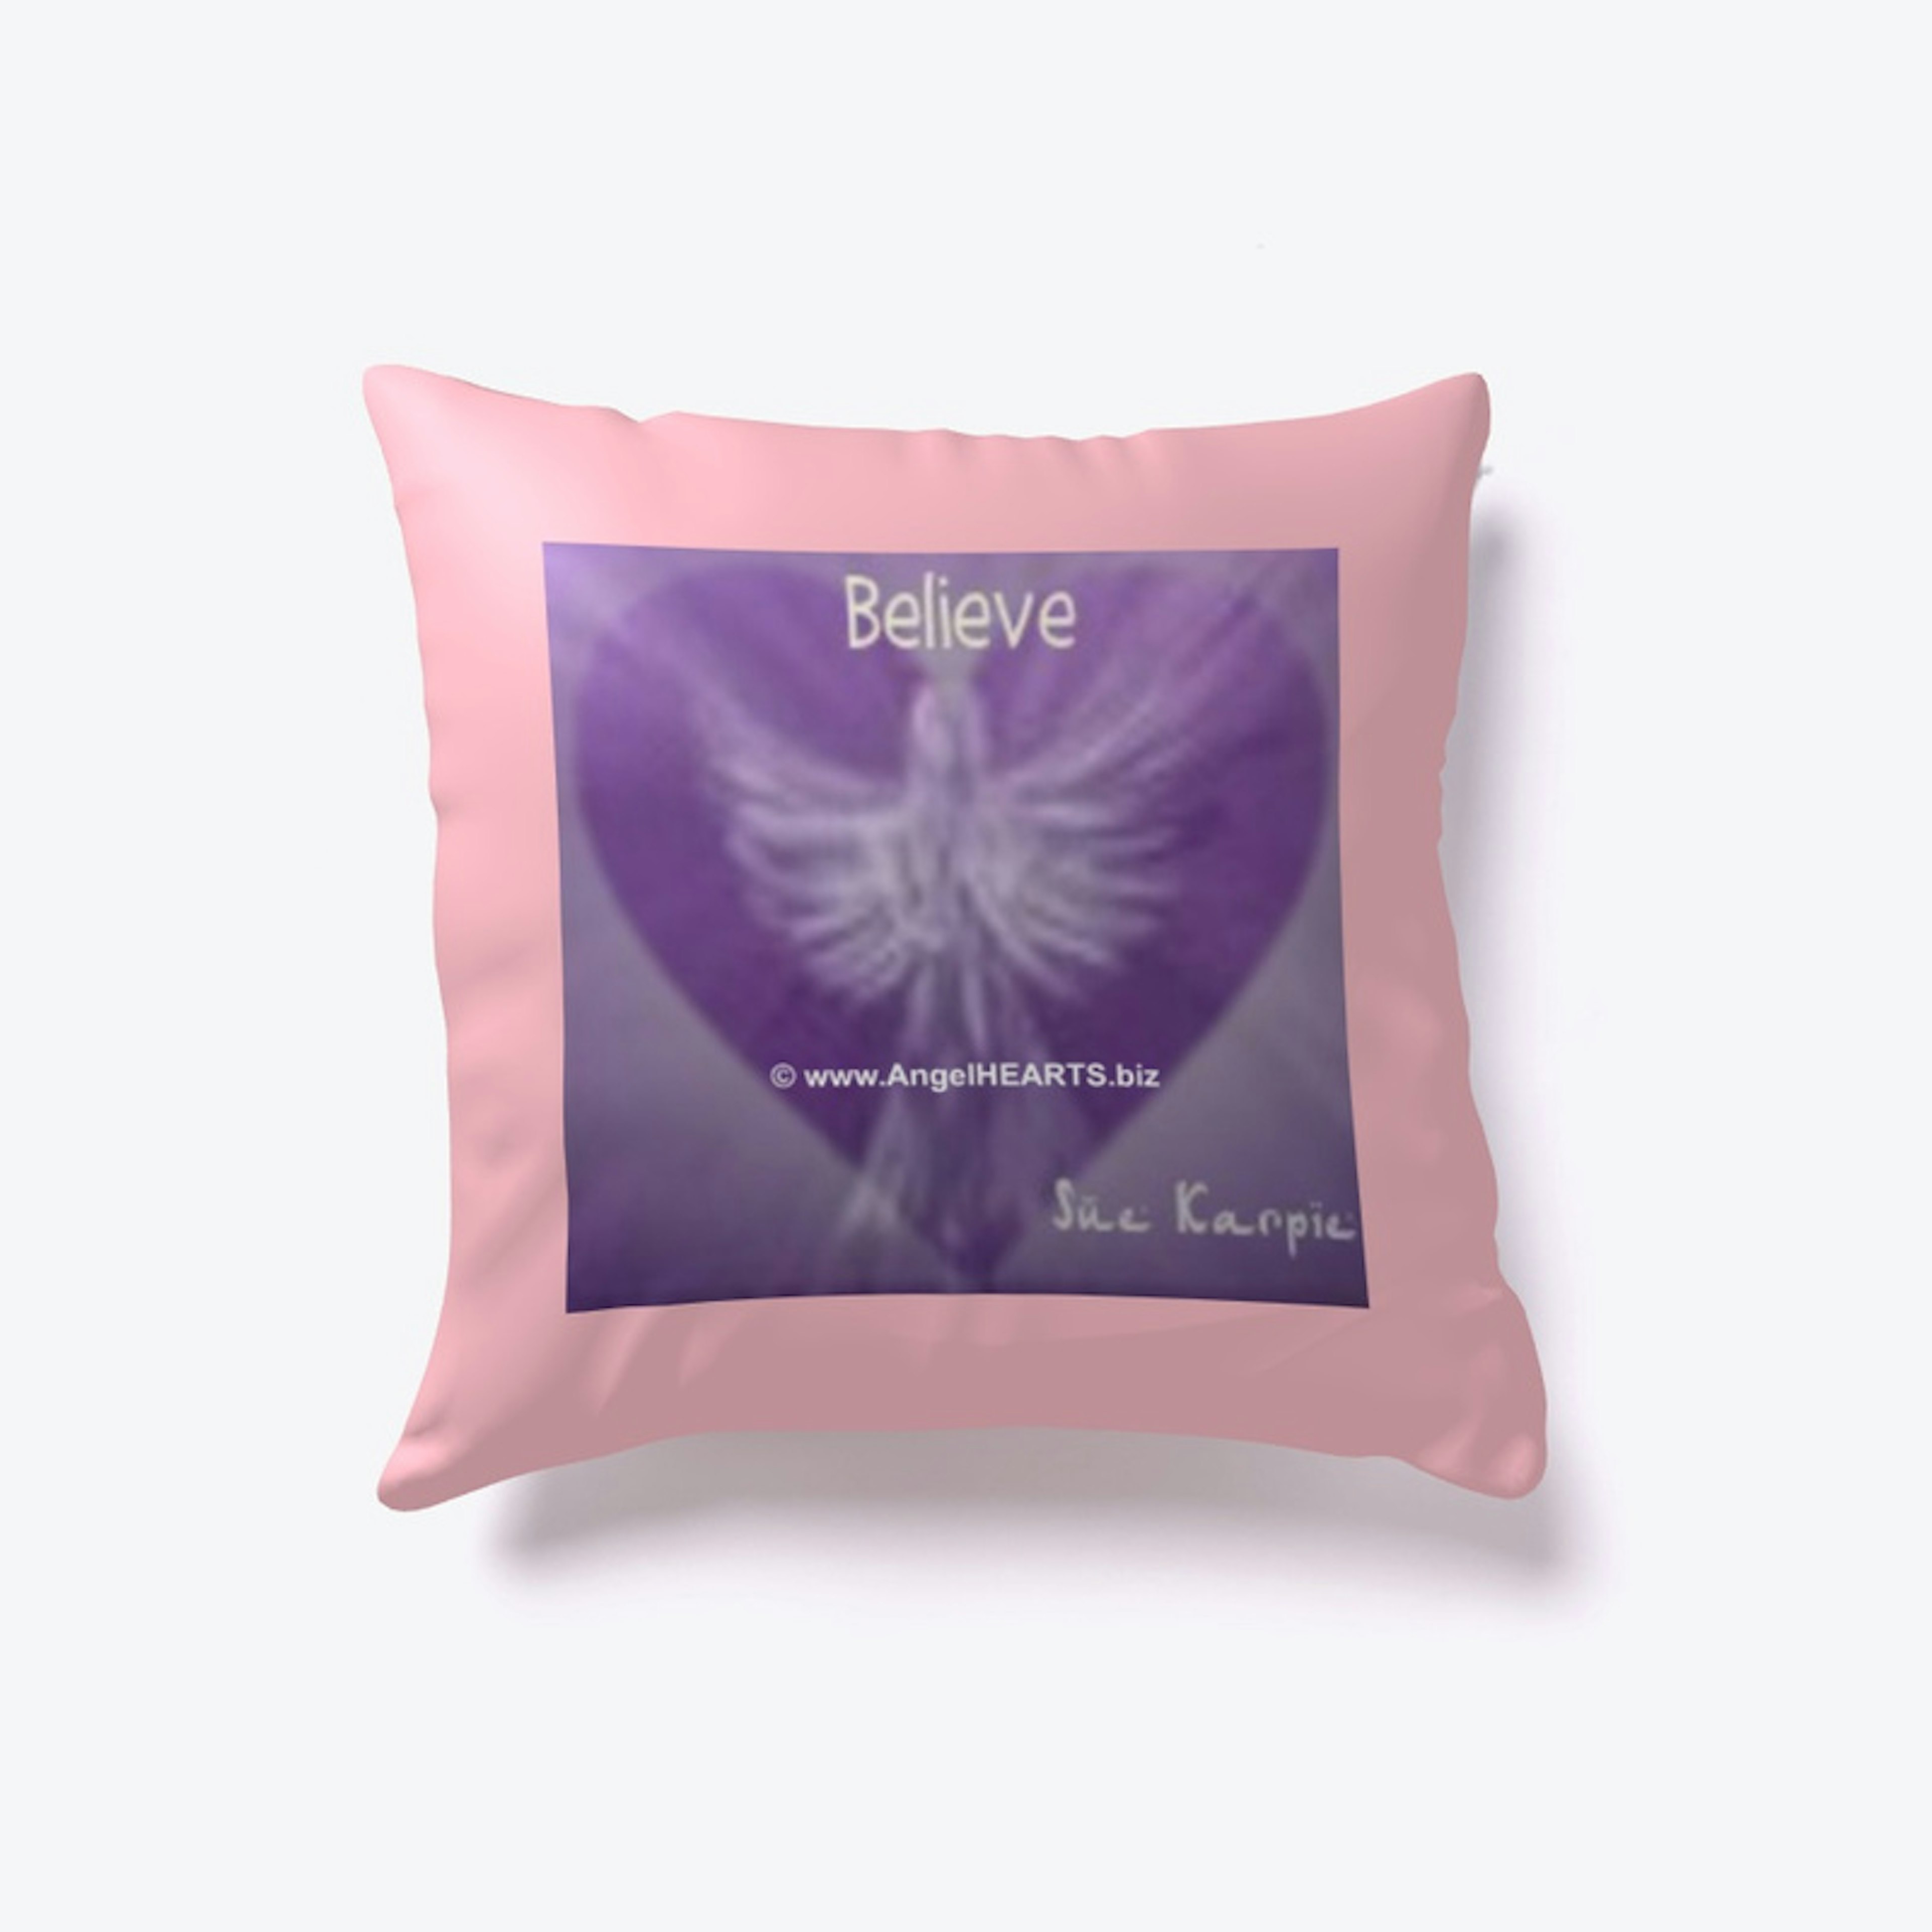 BELIEVE Pillows ...